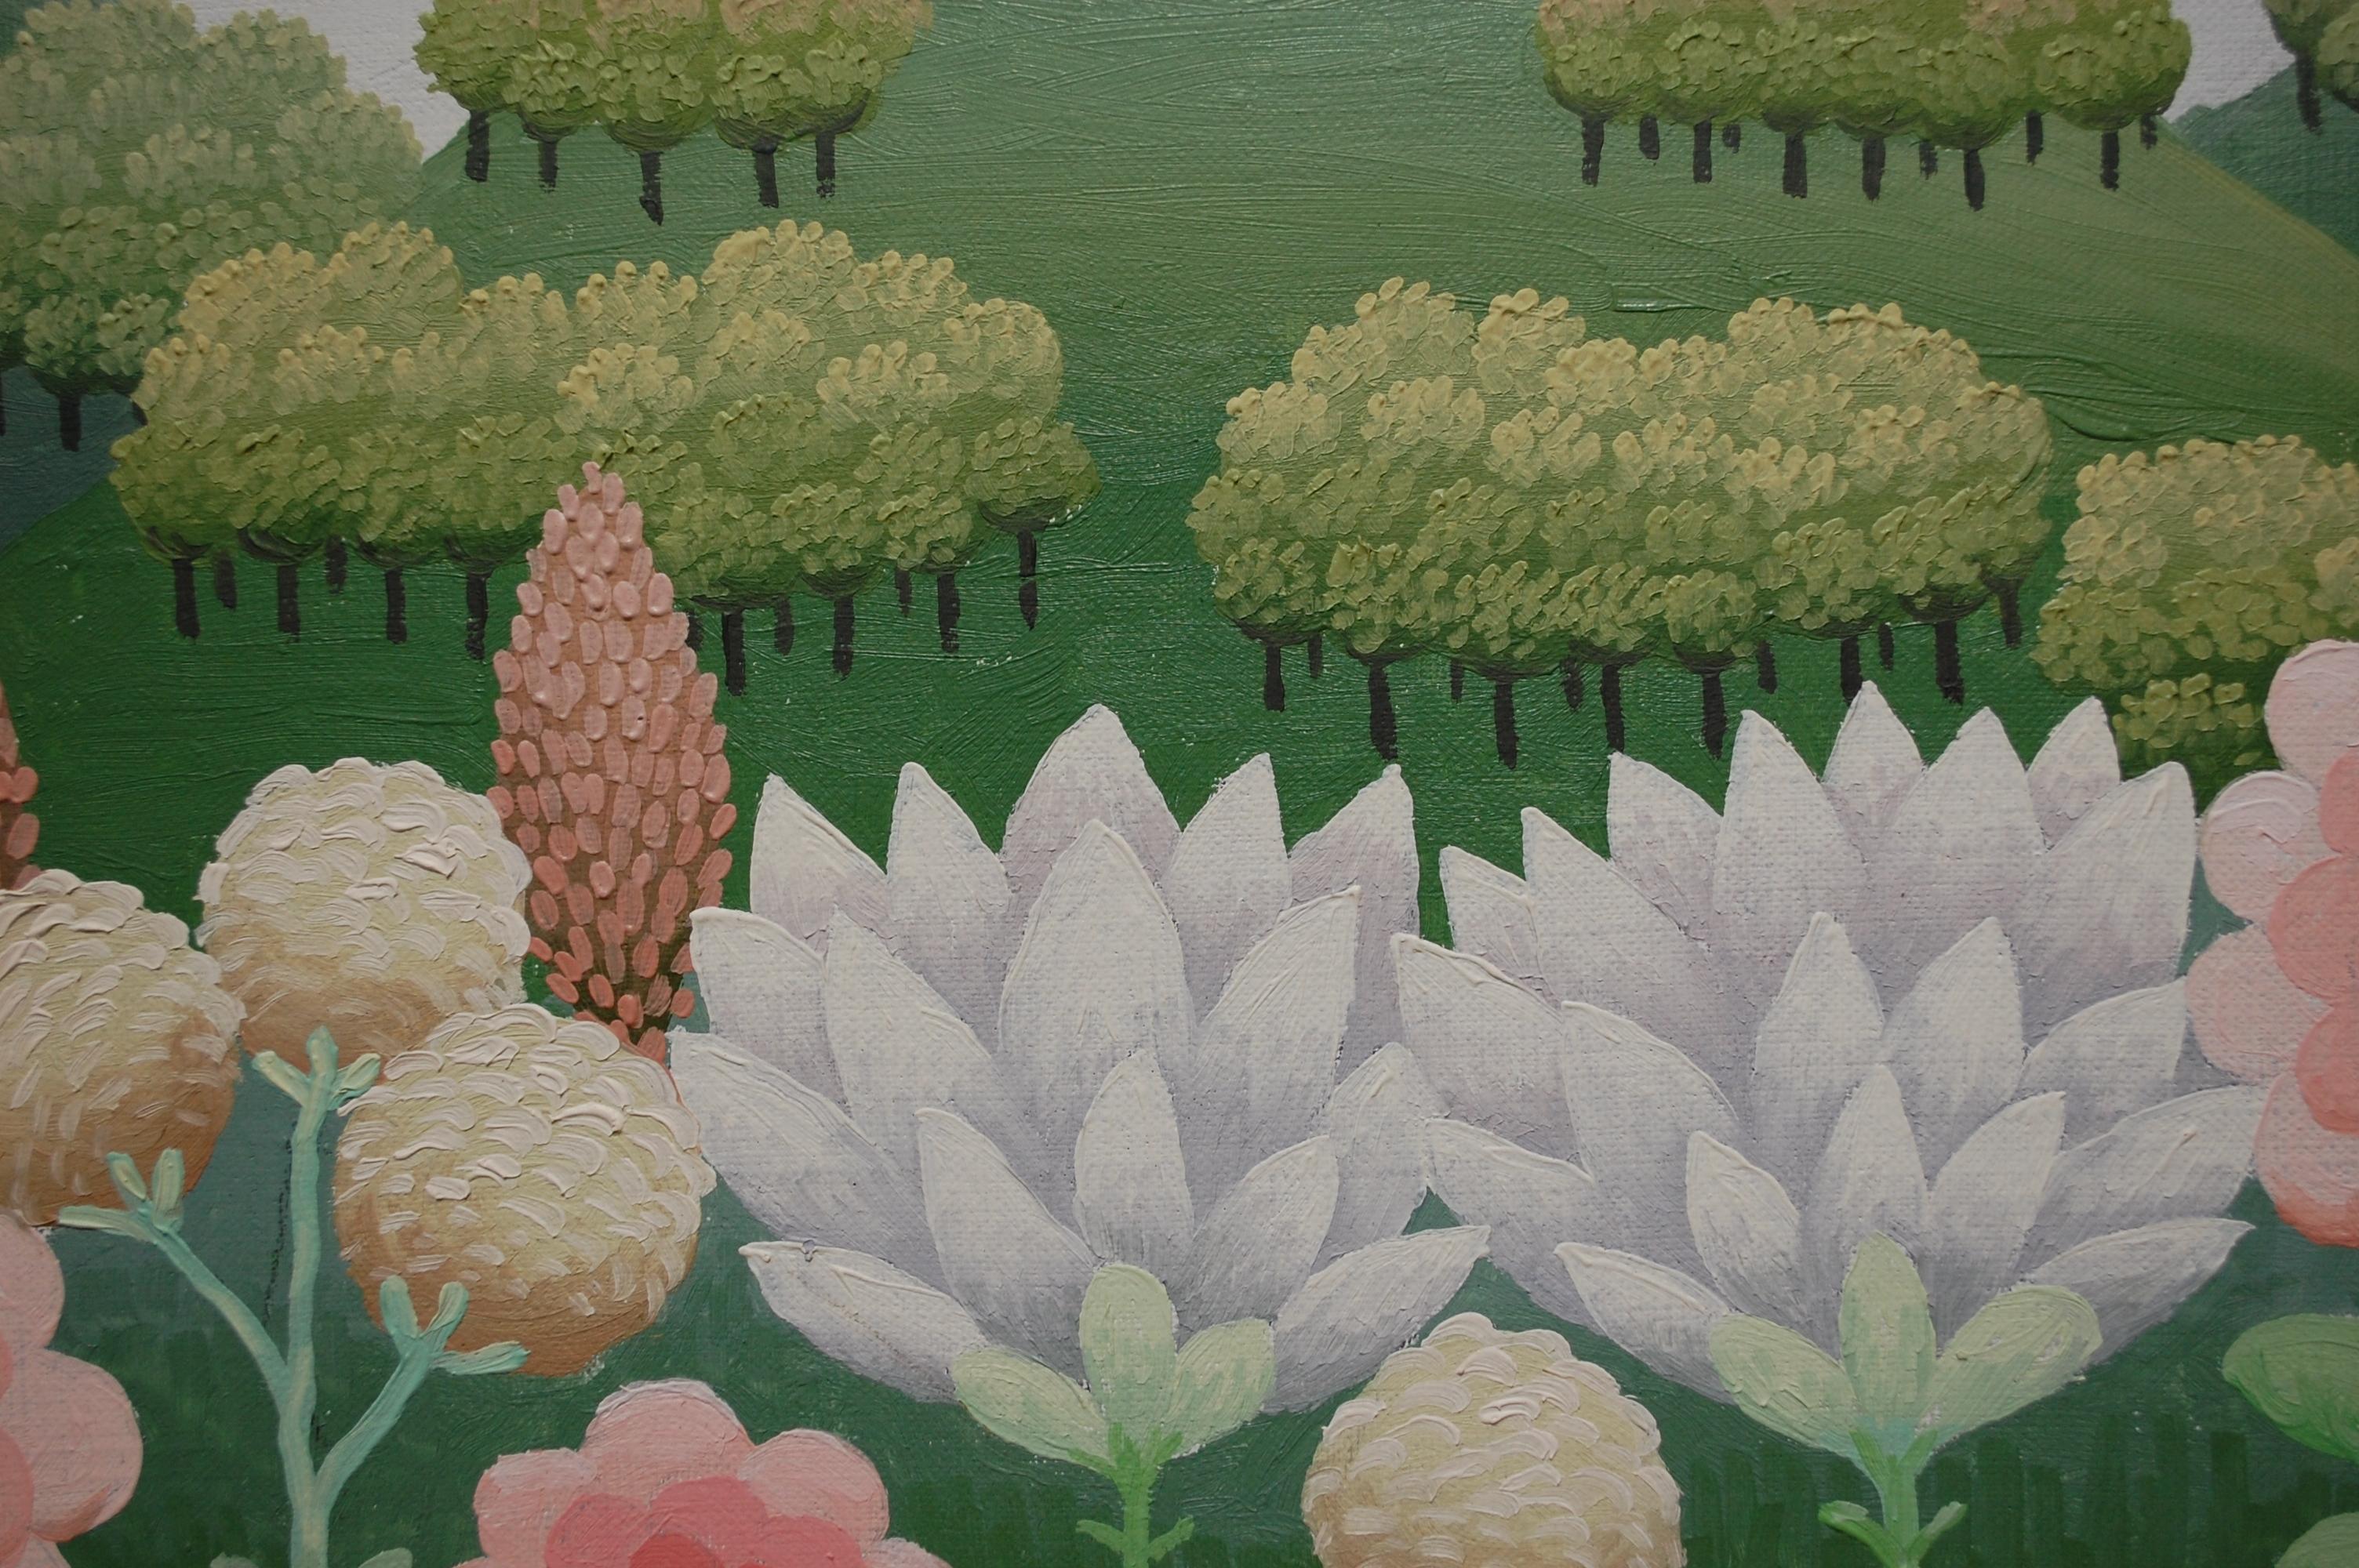 Paysage du jardin d'Eden avec des fleurs
Non signé, huile sur toile 21 